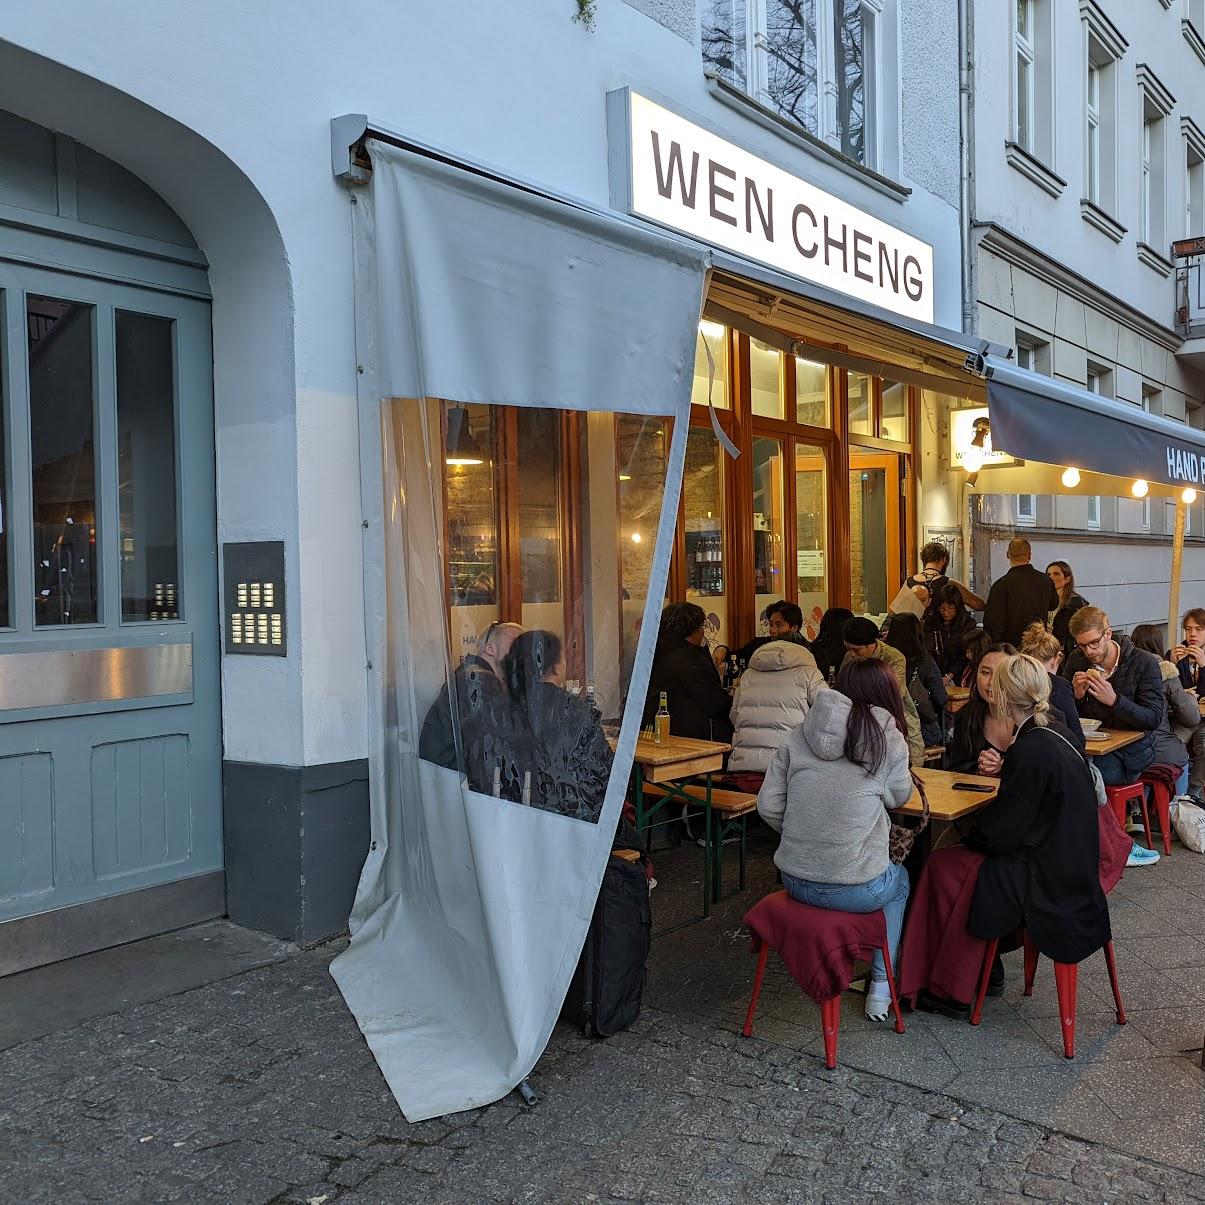 Restaurant "Wen Cheng Handgezogene Nudeln" in Berlin